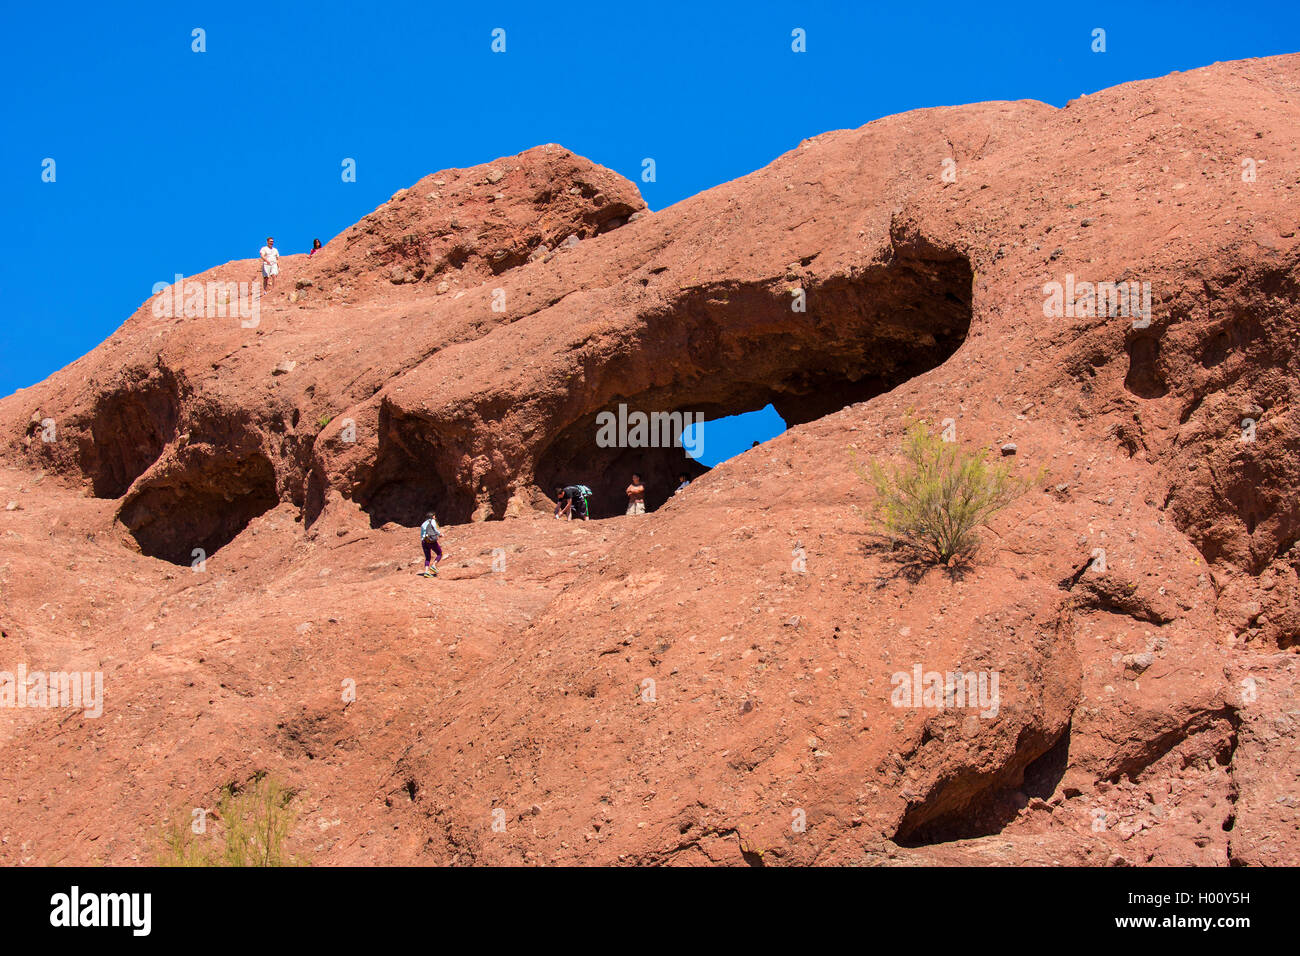 Agujero-en-el-Rock, cueva de la piedra arenisca roja con la escalada de los turistas, ESTADOS UNIDOS, Arizona, el parque Papago, Phoenix Foto de stock